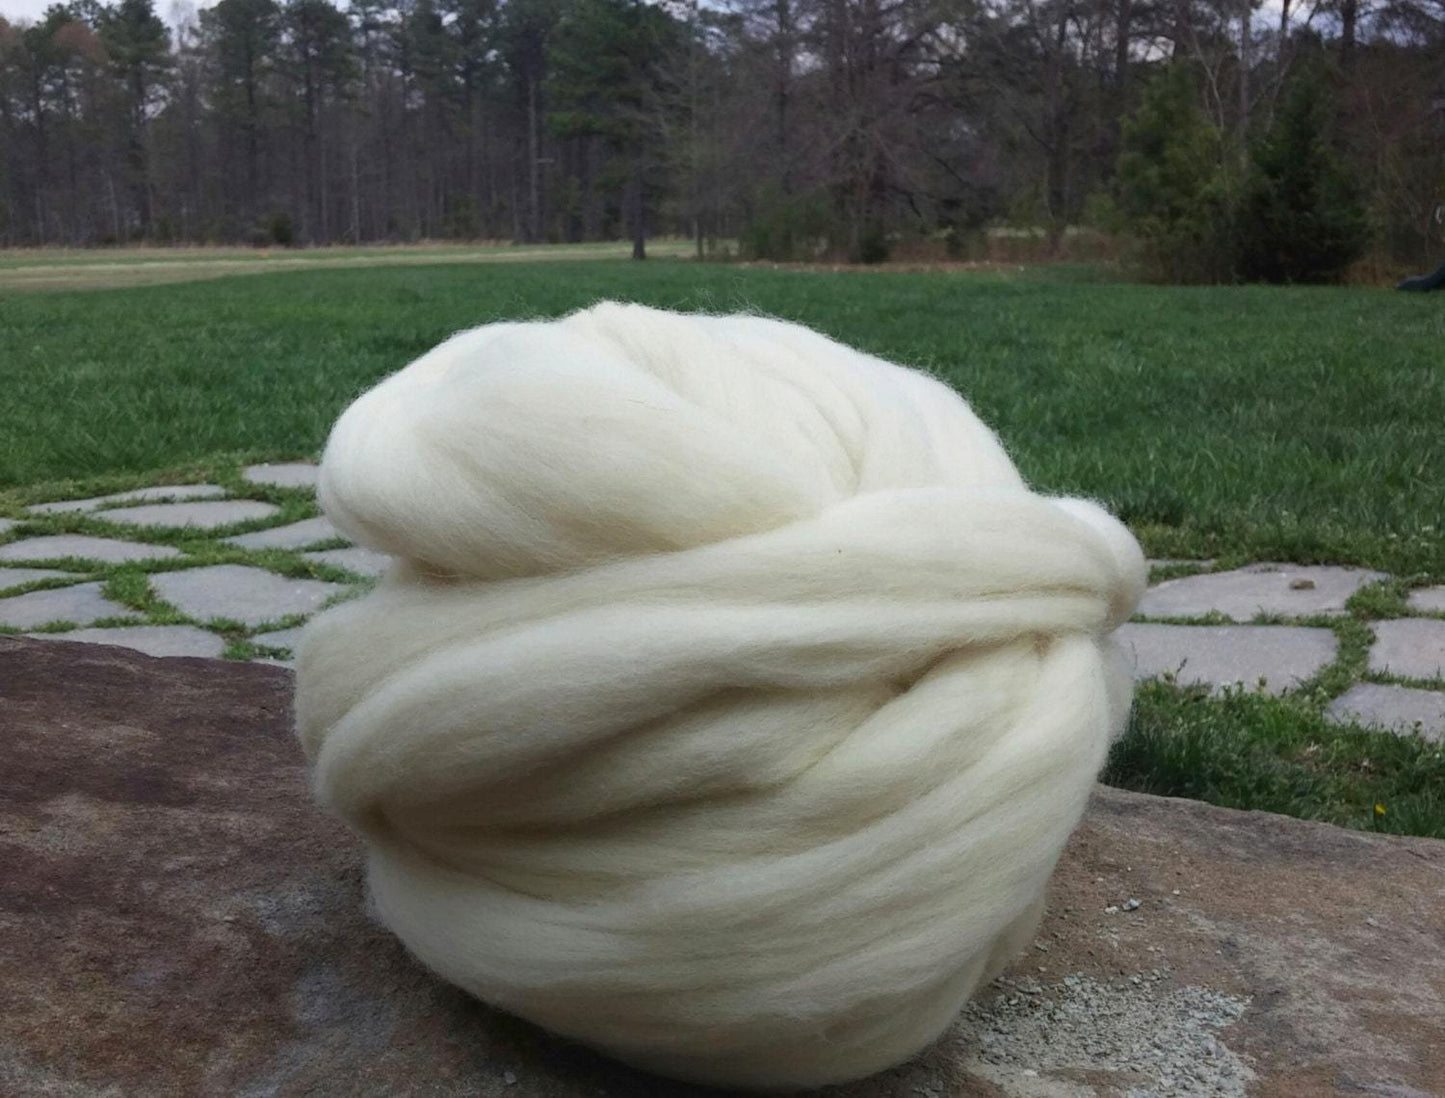 Art Class Wool Roving 30lbs Roll Natural White Wool Top Fiber Spinning, Felting, Knitting, Weaving Wool supplies Wool Bump Wool Supplier